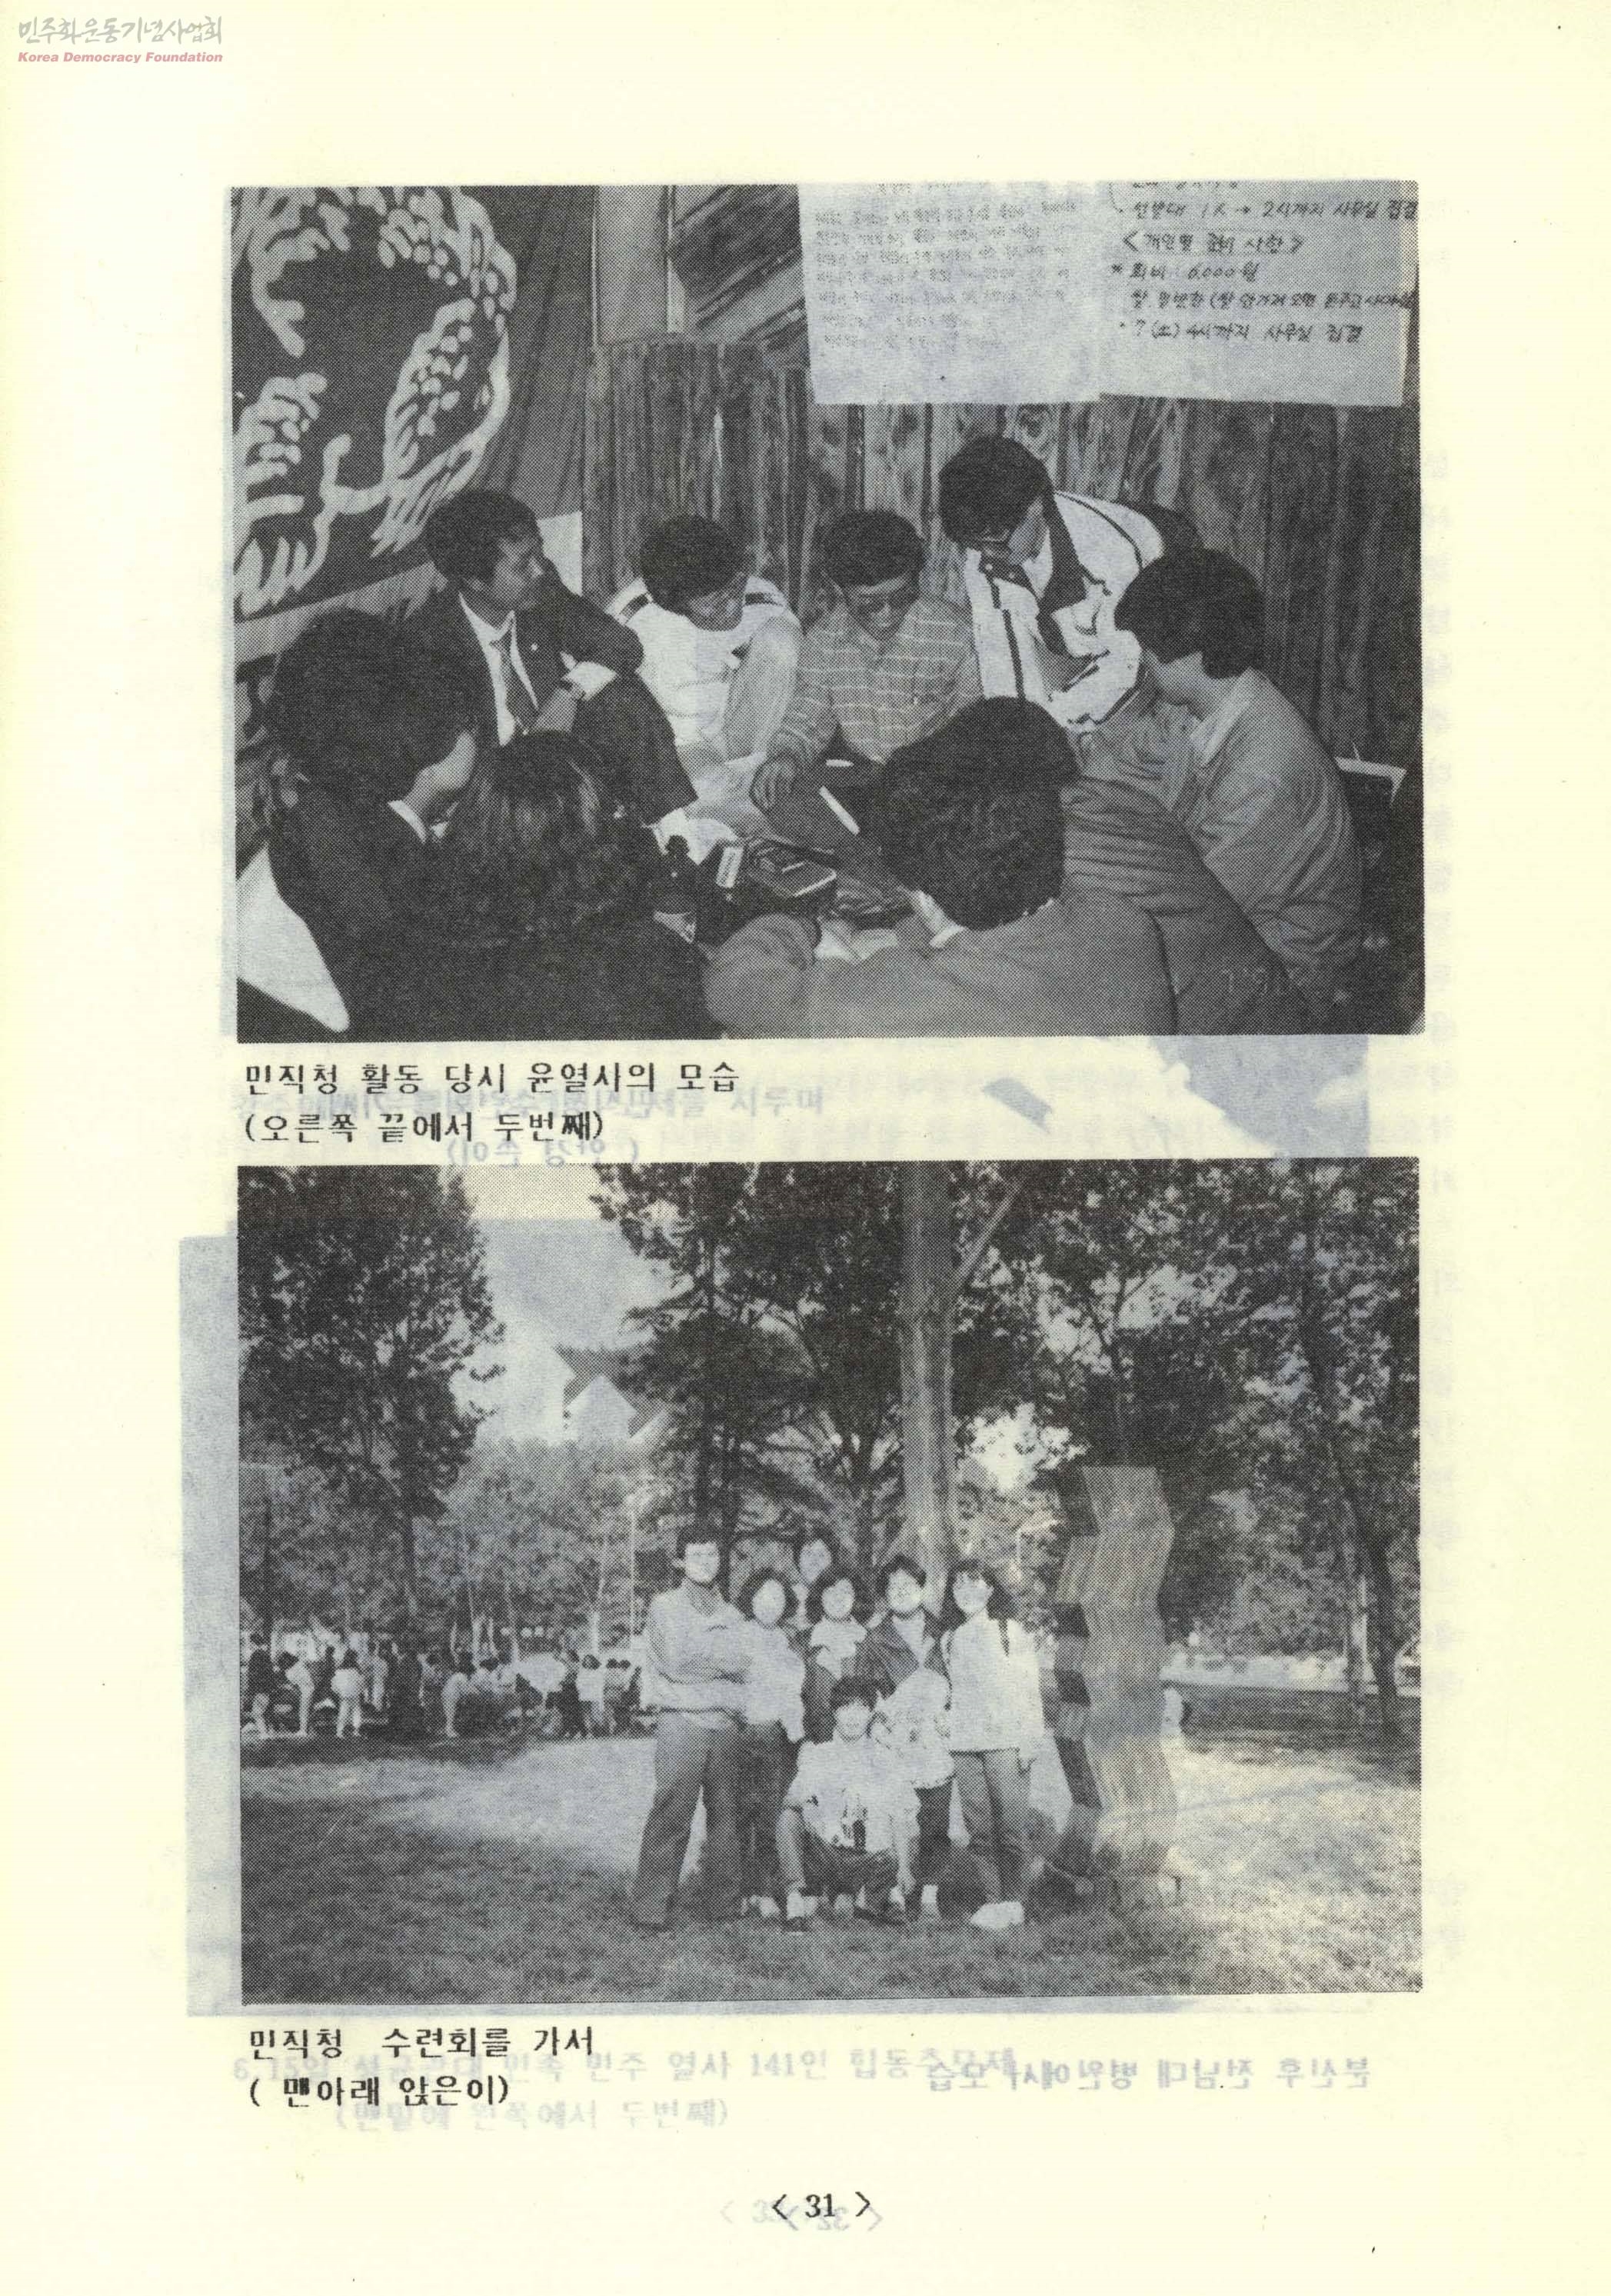 민직청 회원으로 활동하던 당시 윤용하 열사의 모습(위 사진 오른쪽 끝에서 두번째, 아래 사진 맨아래 앉은 이).